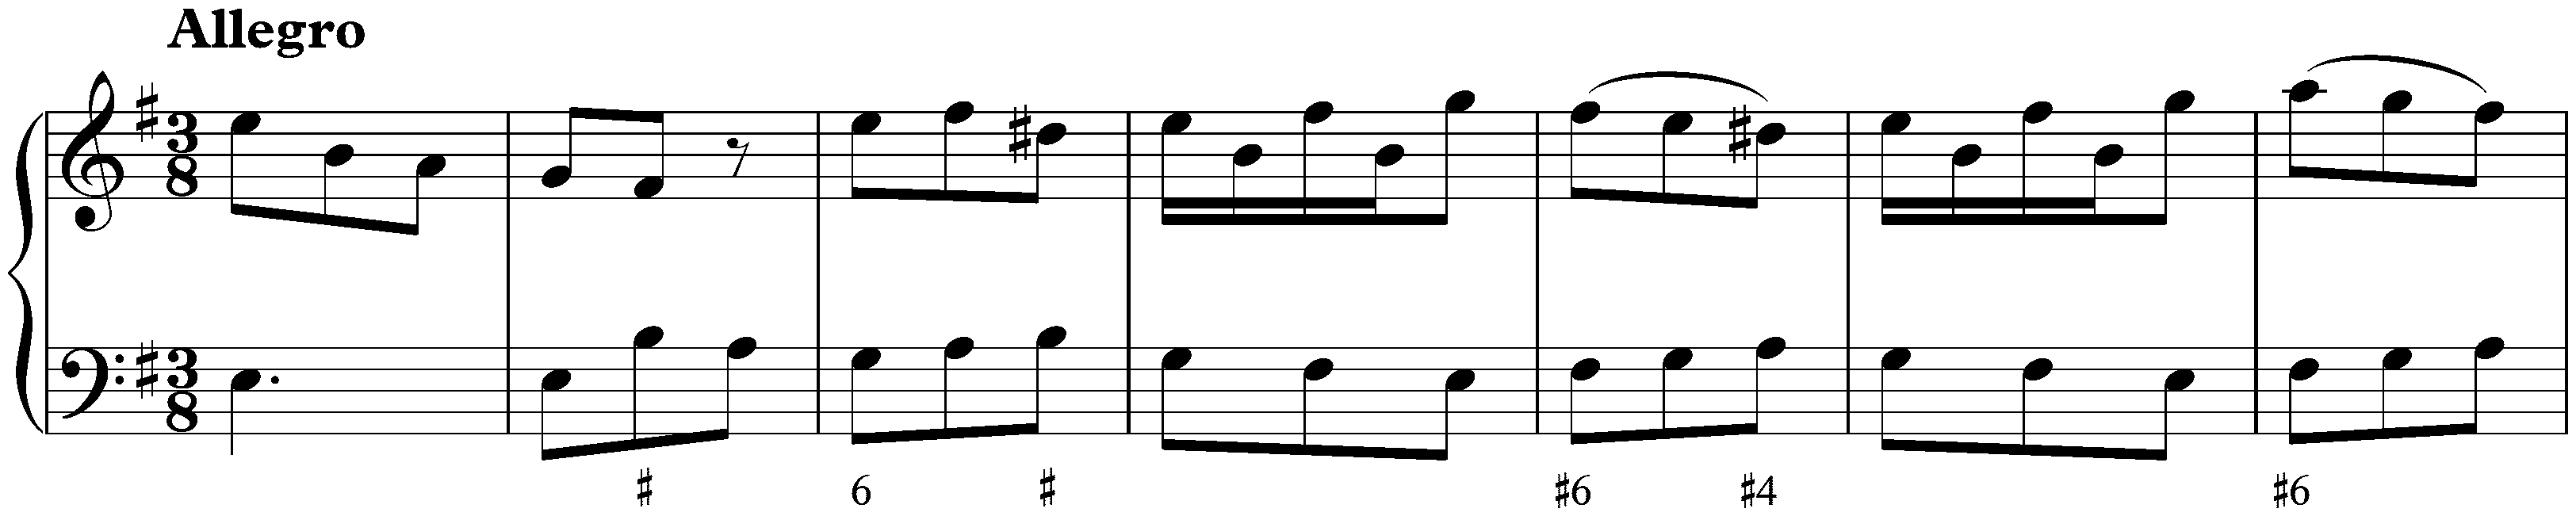 Sonata in E minor, K. 81; 4. Allegro